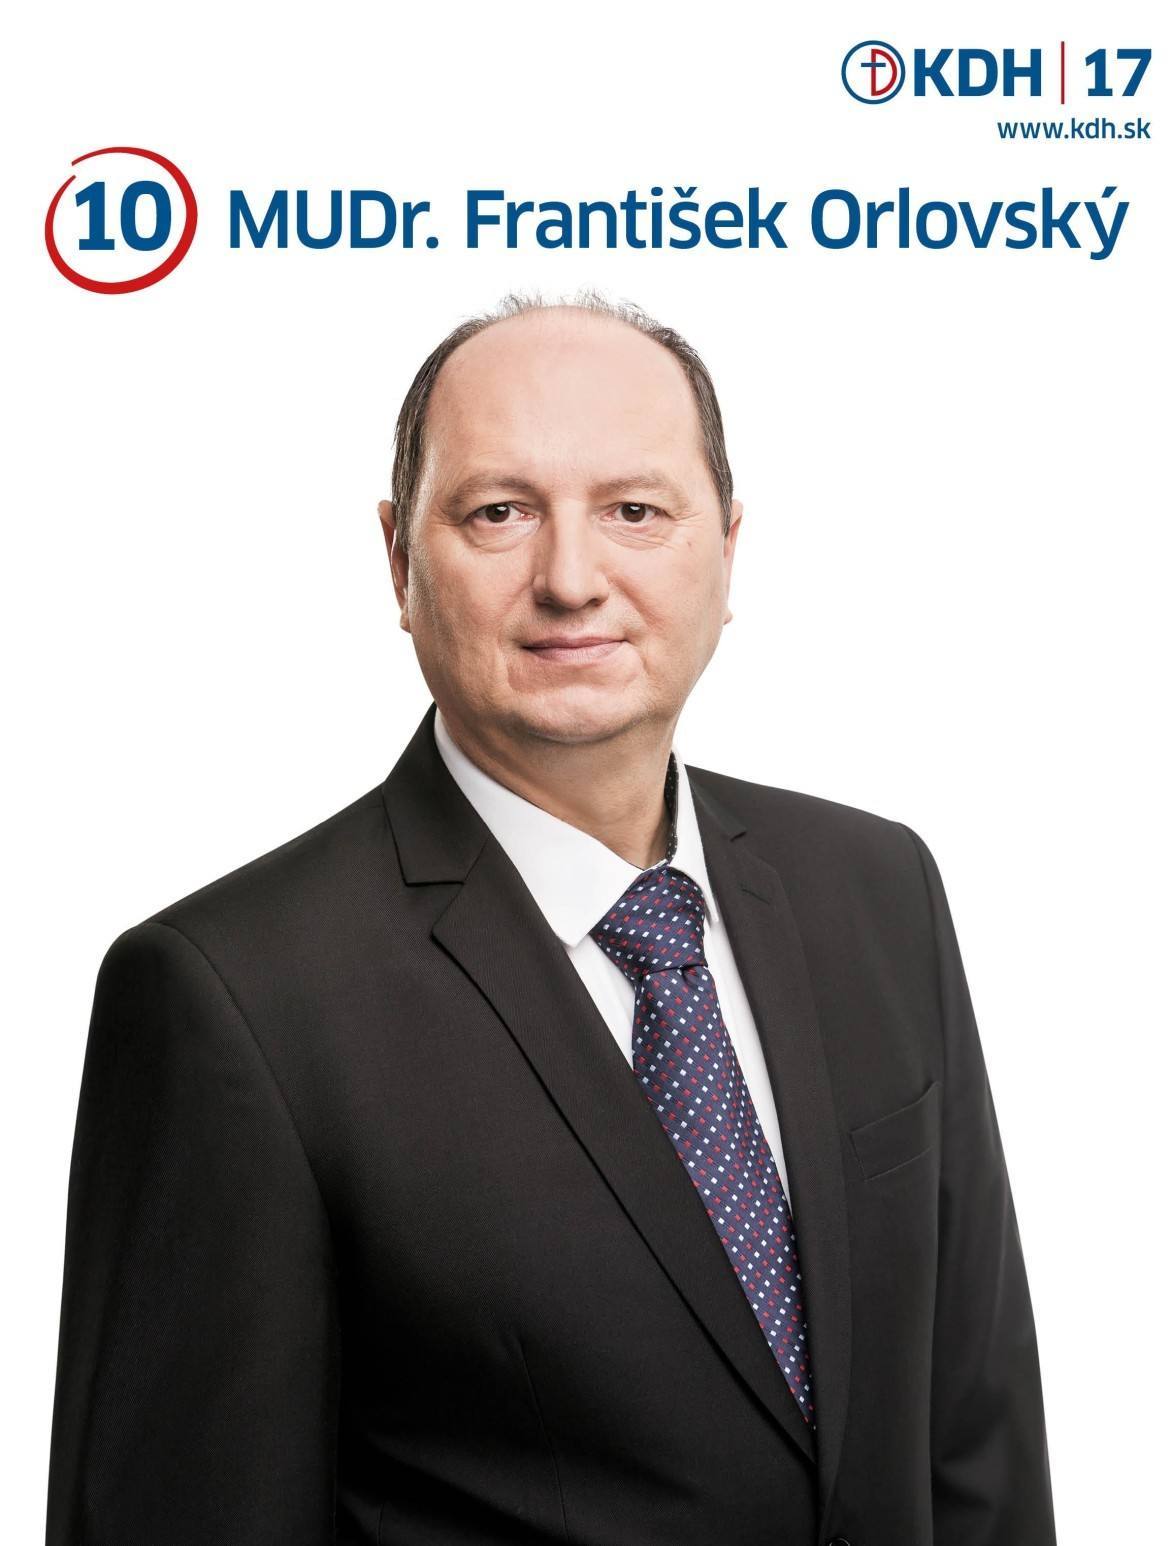 MUDr. František Orlovský  (KDH)